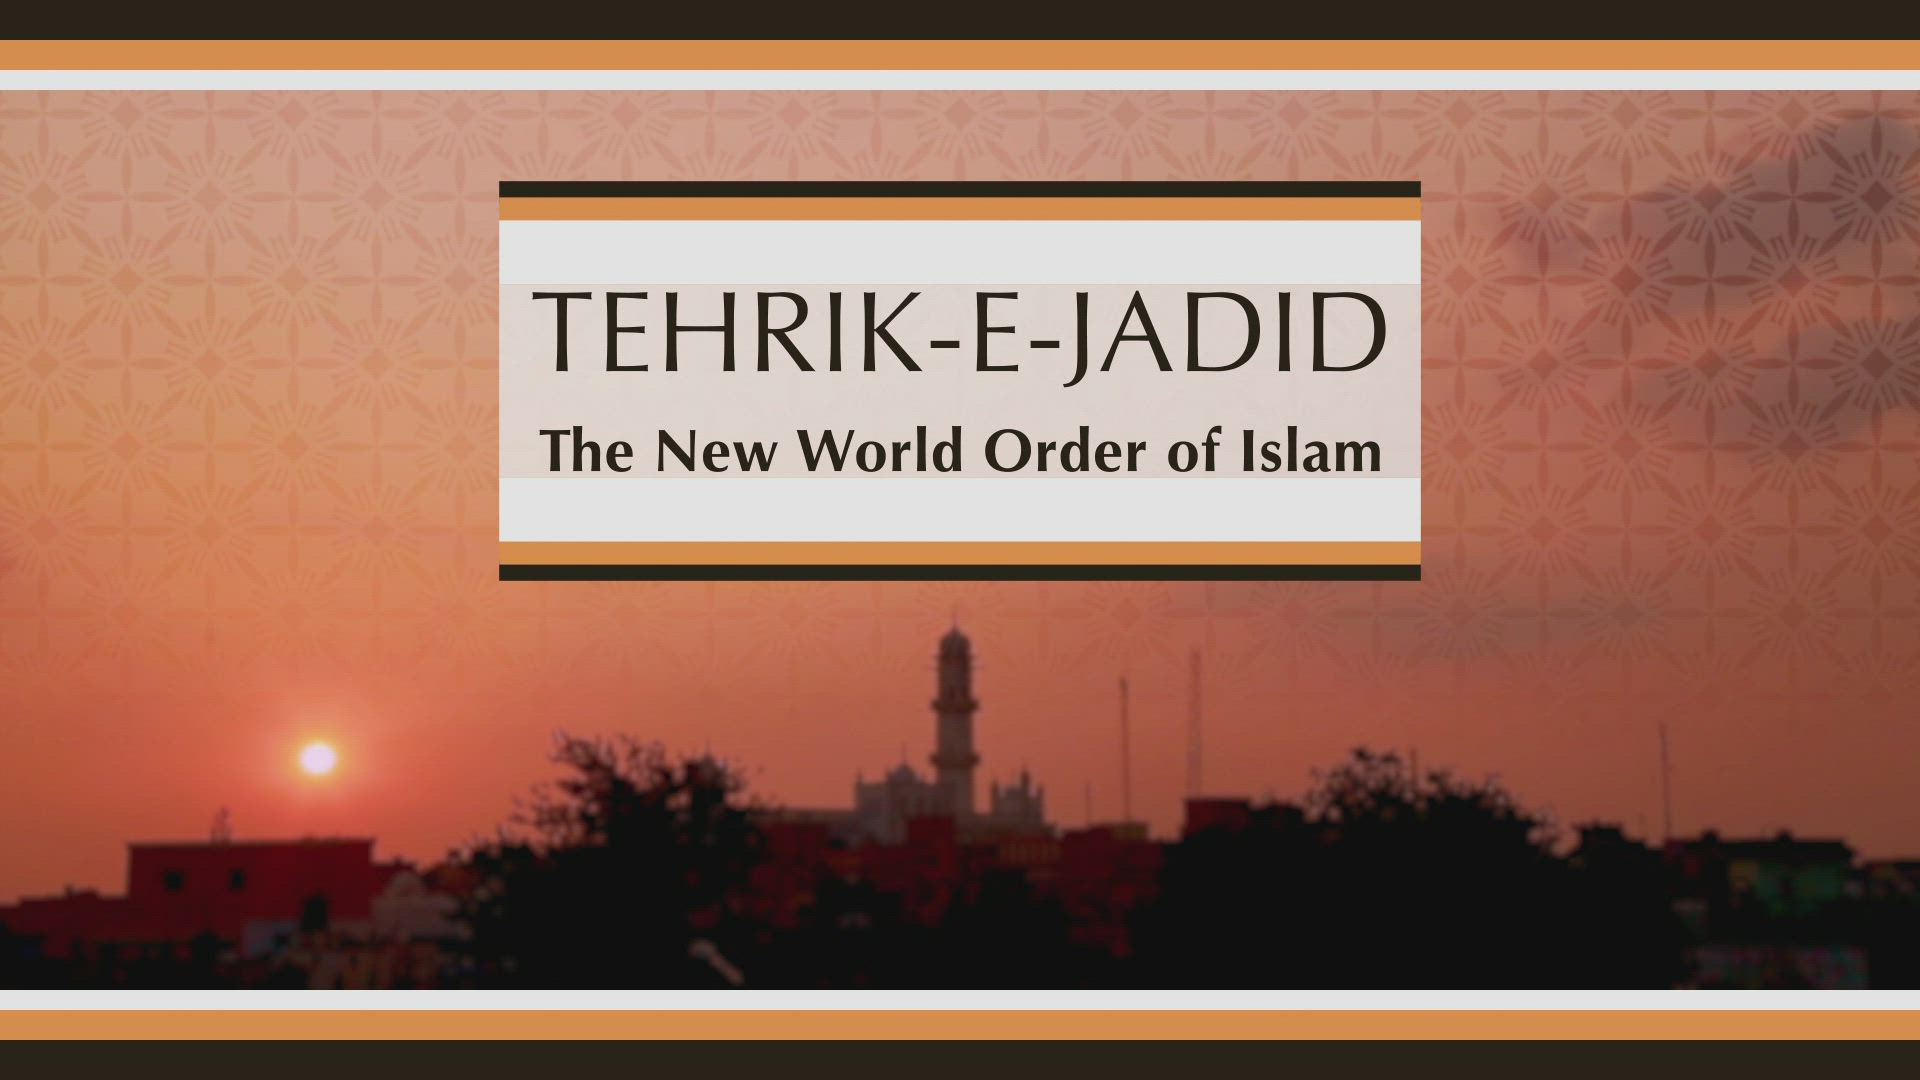 Tehrik-e-Jadid